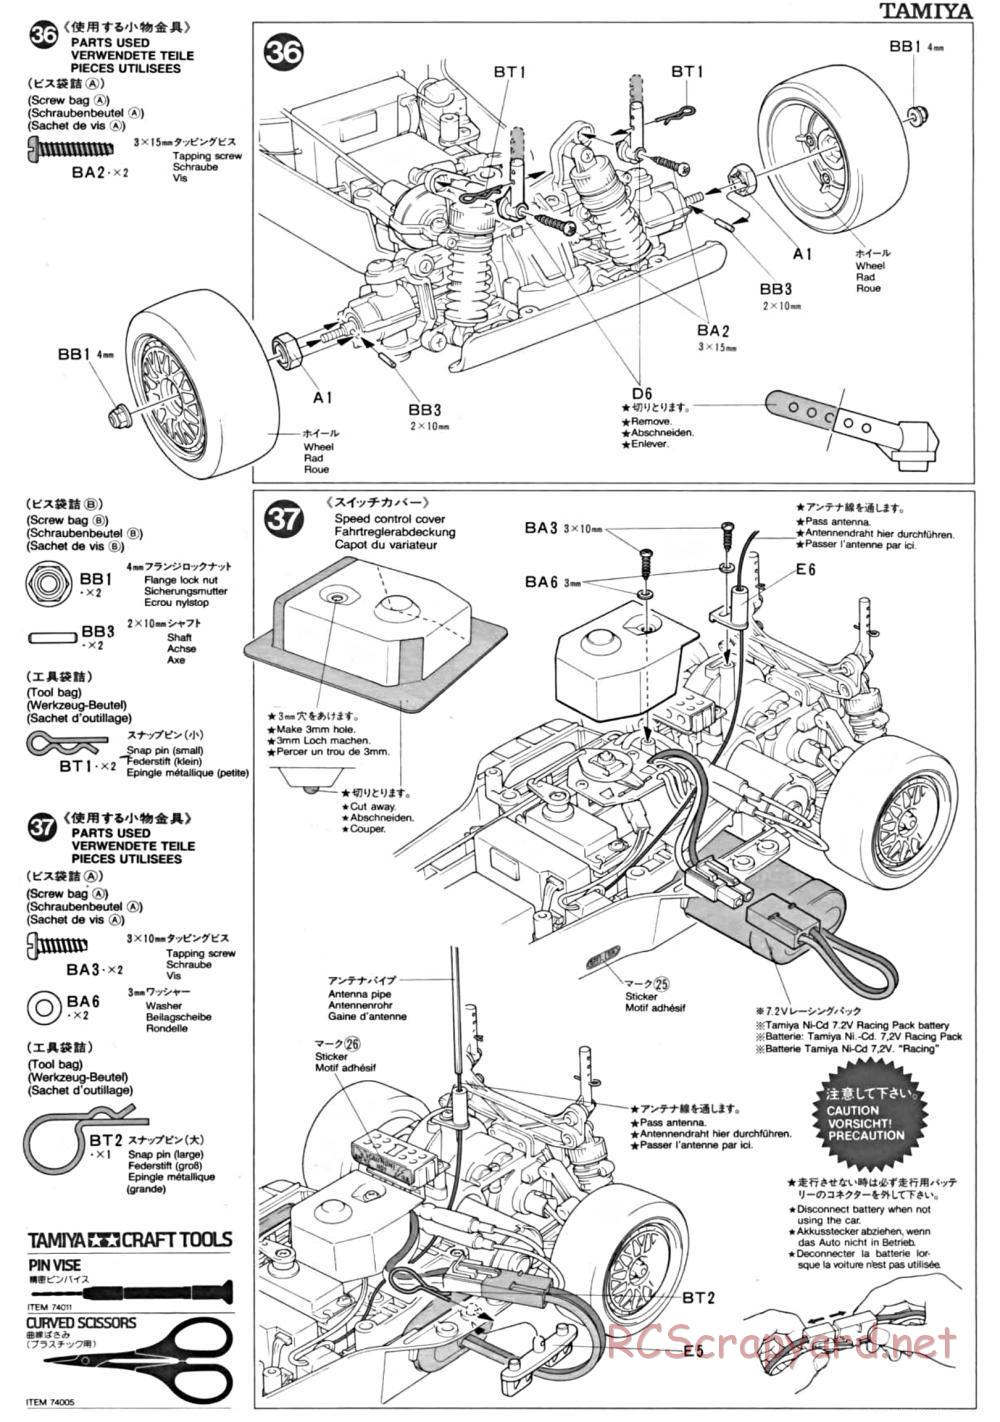 Tamiya - TA-01 Chassis - Manual - Page 14